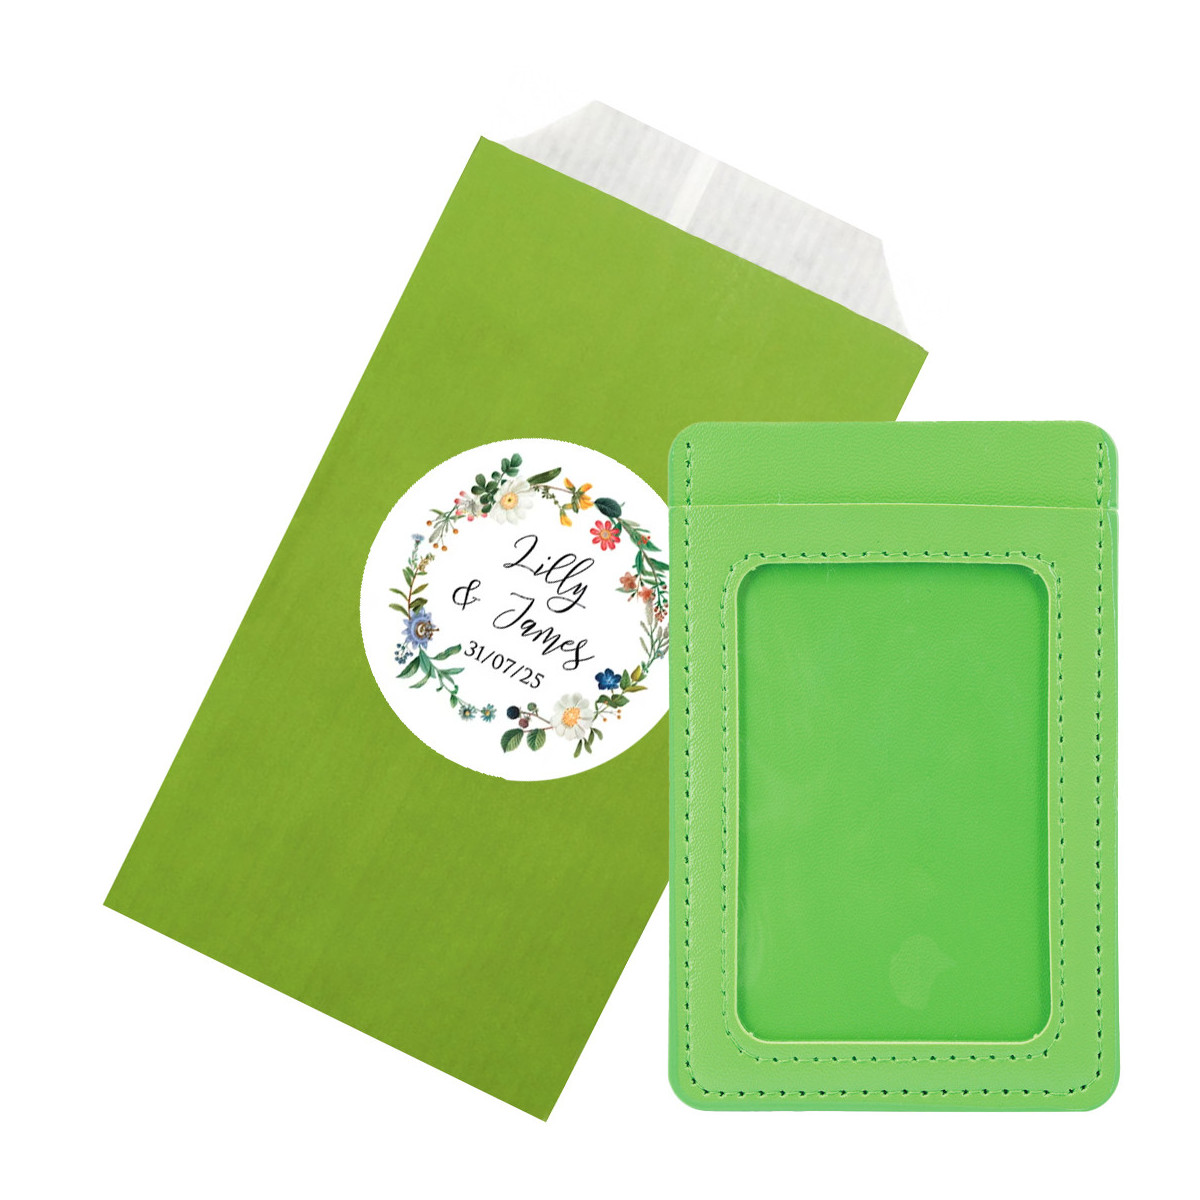 Tarjetero polipiel con ventana en color verde presentado en sobre de papel y adhesivo para foto